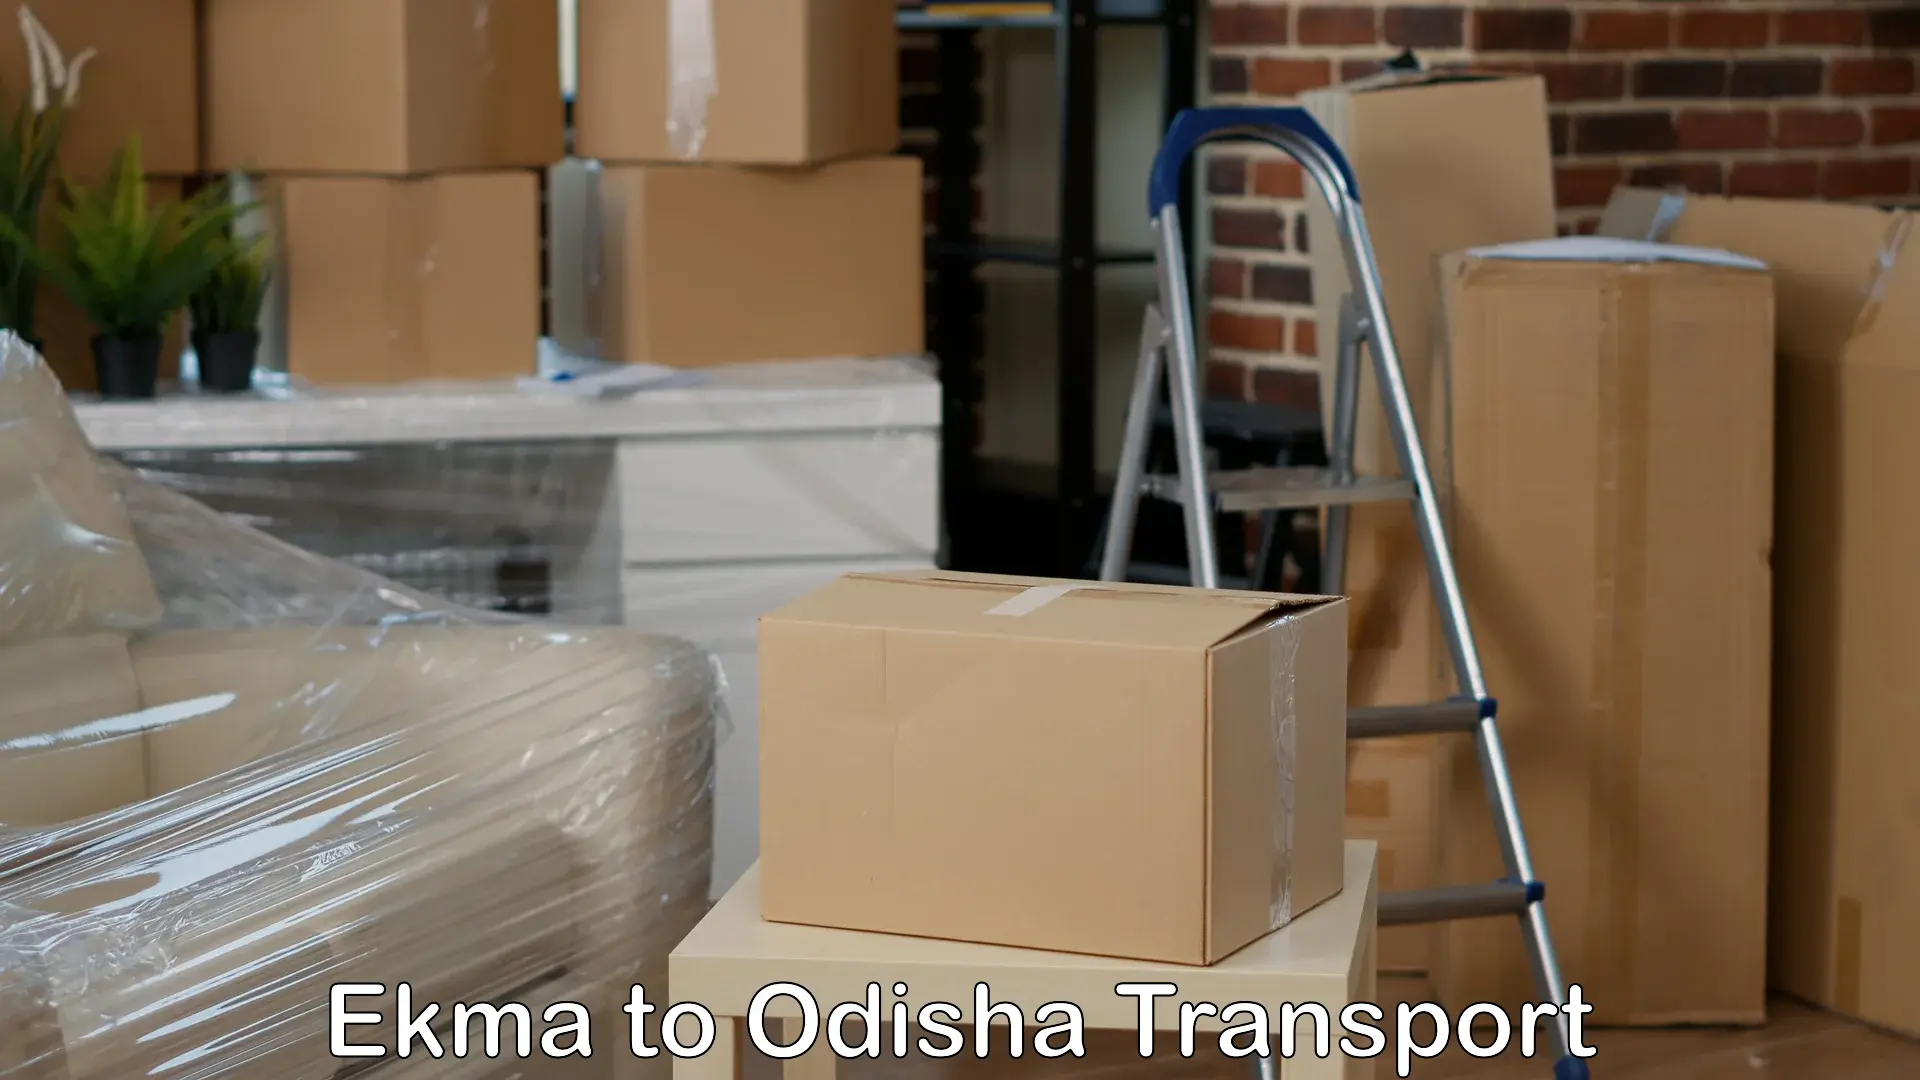 Shipping services Ekma to Dhamanagar